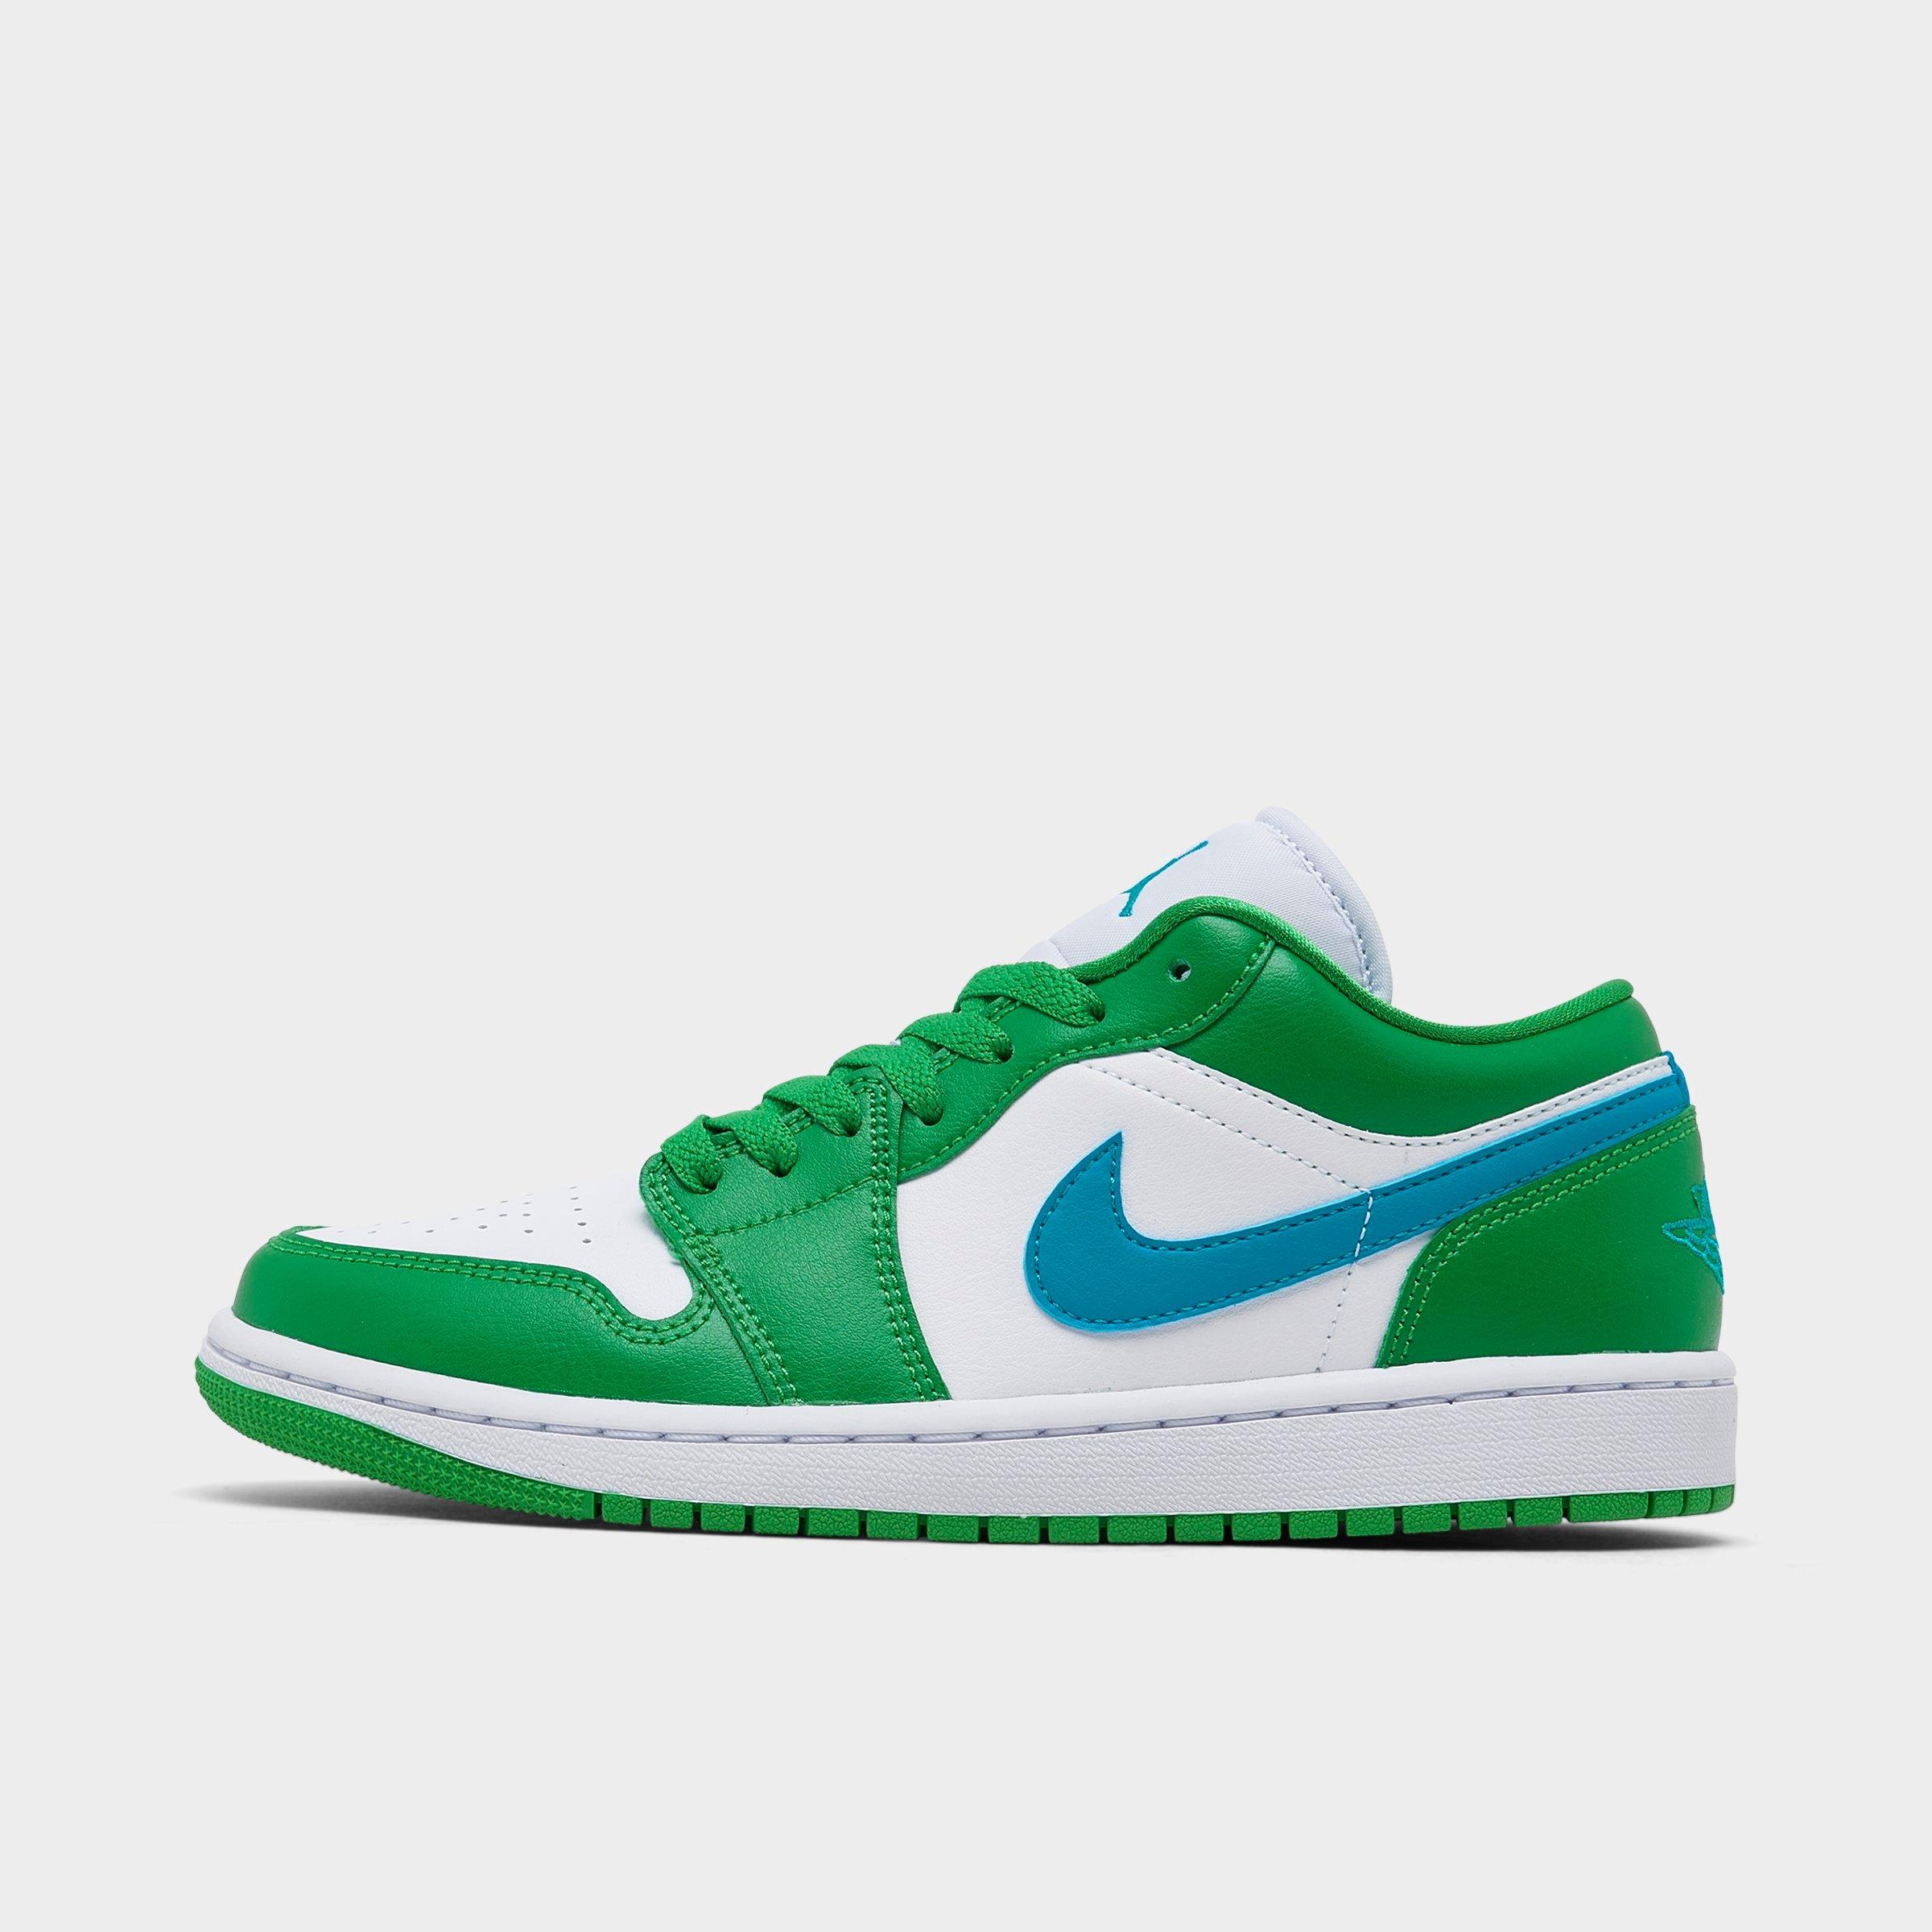 Nike Jordan Women's Air Retro 1 Low Casual Shoes In Lucky Green/aquatone/white